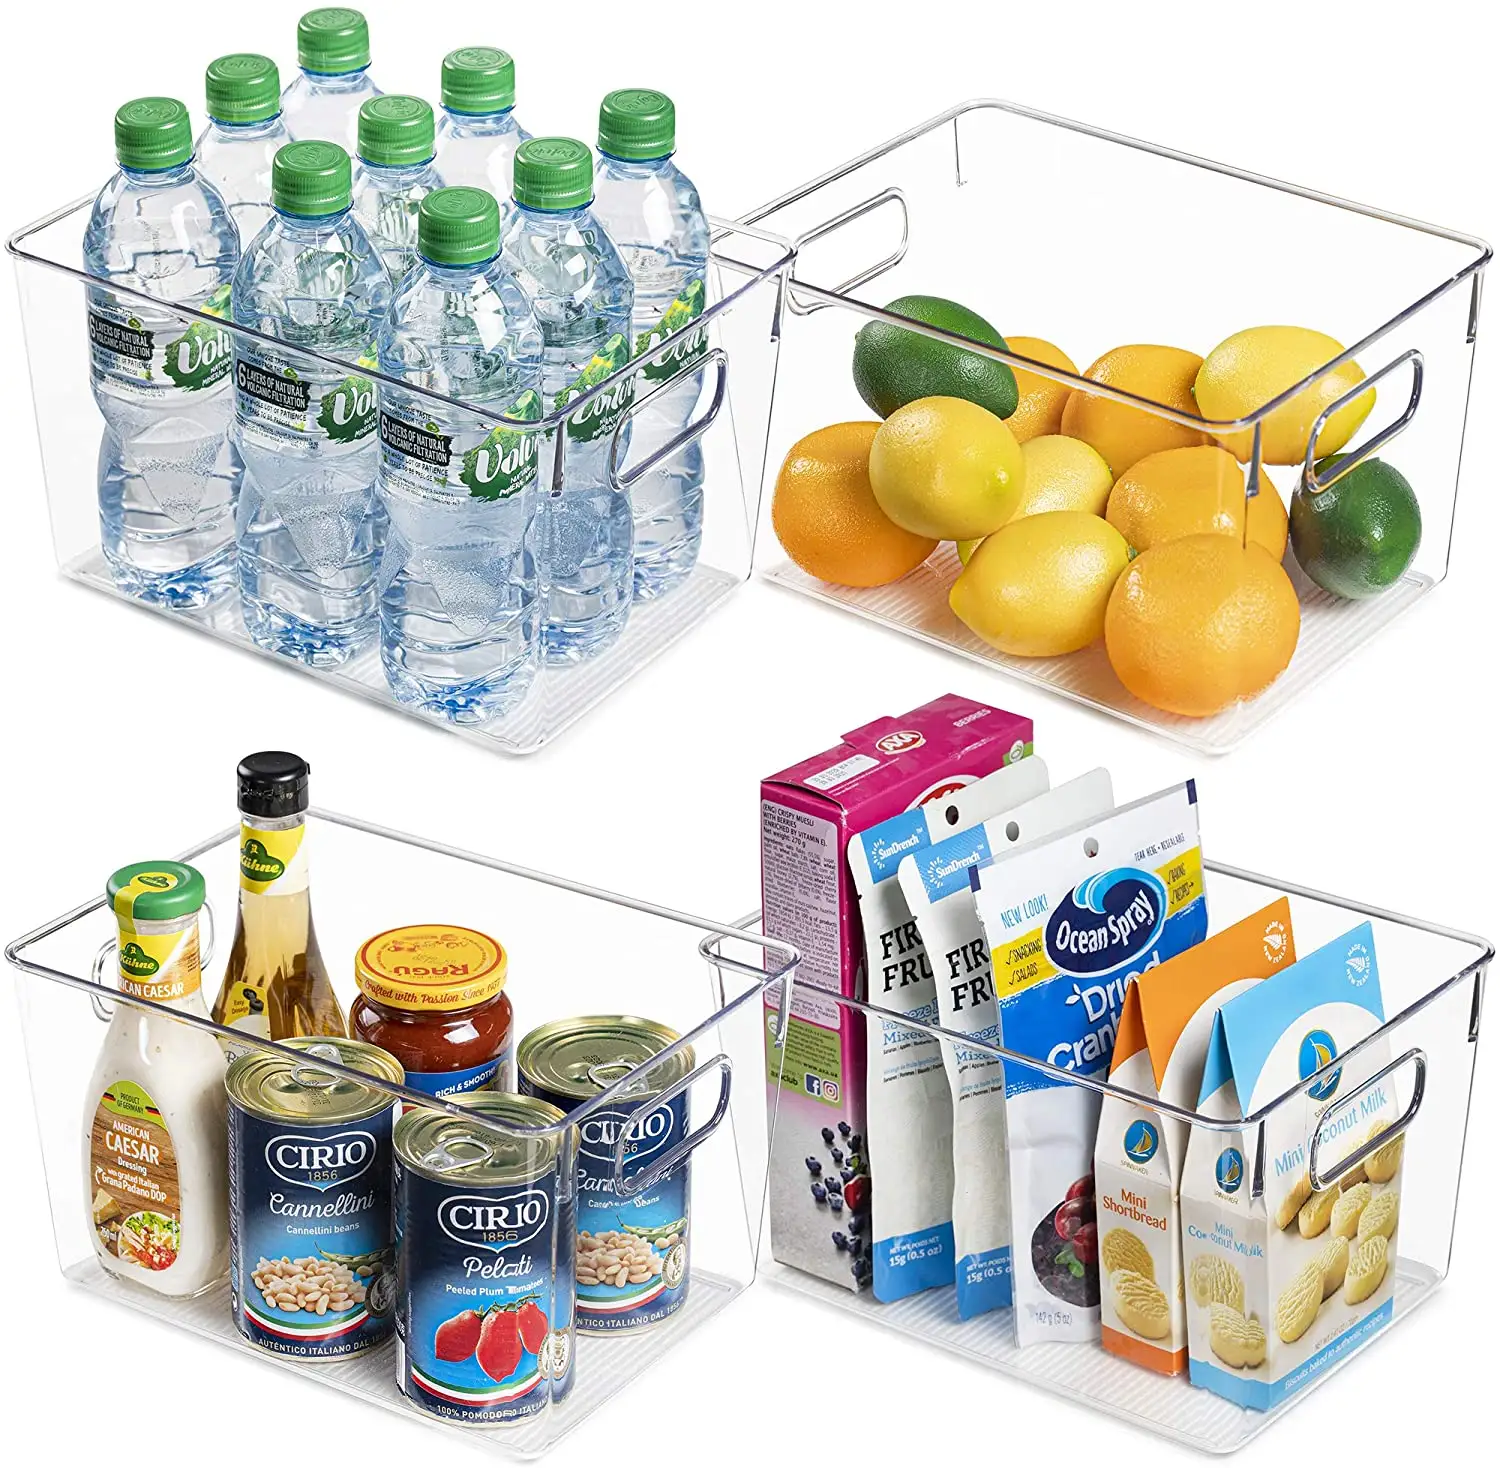 4 Stuks Clear Pantry Organizer Bakken Huishoudelijke Plastic Voedsel Opslag Mand Ood Opbergbakken Met Handvat Voor Koelkast, Koelkast